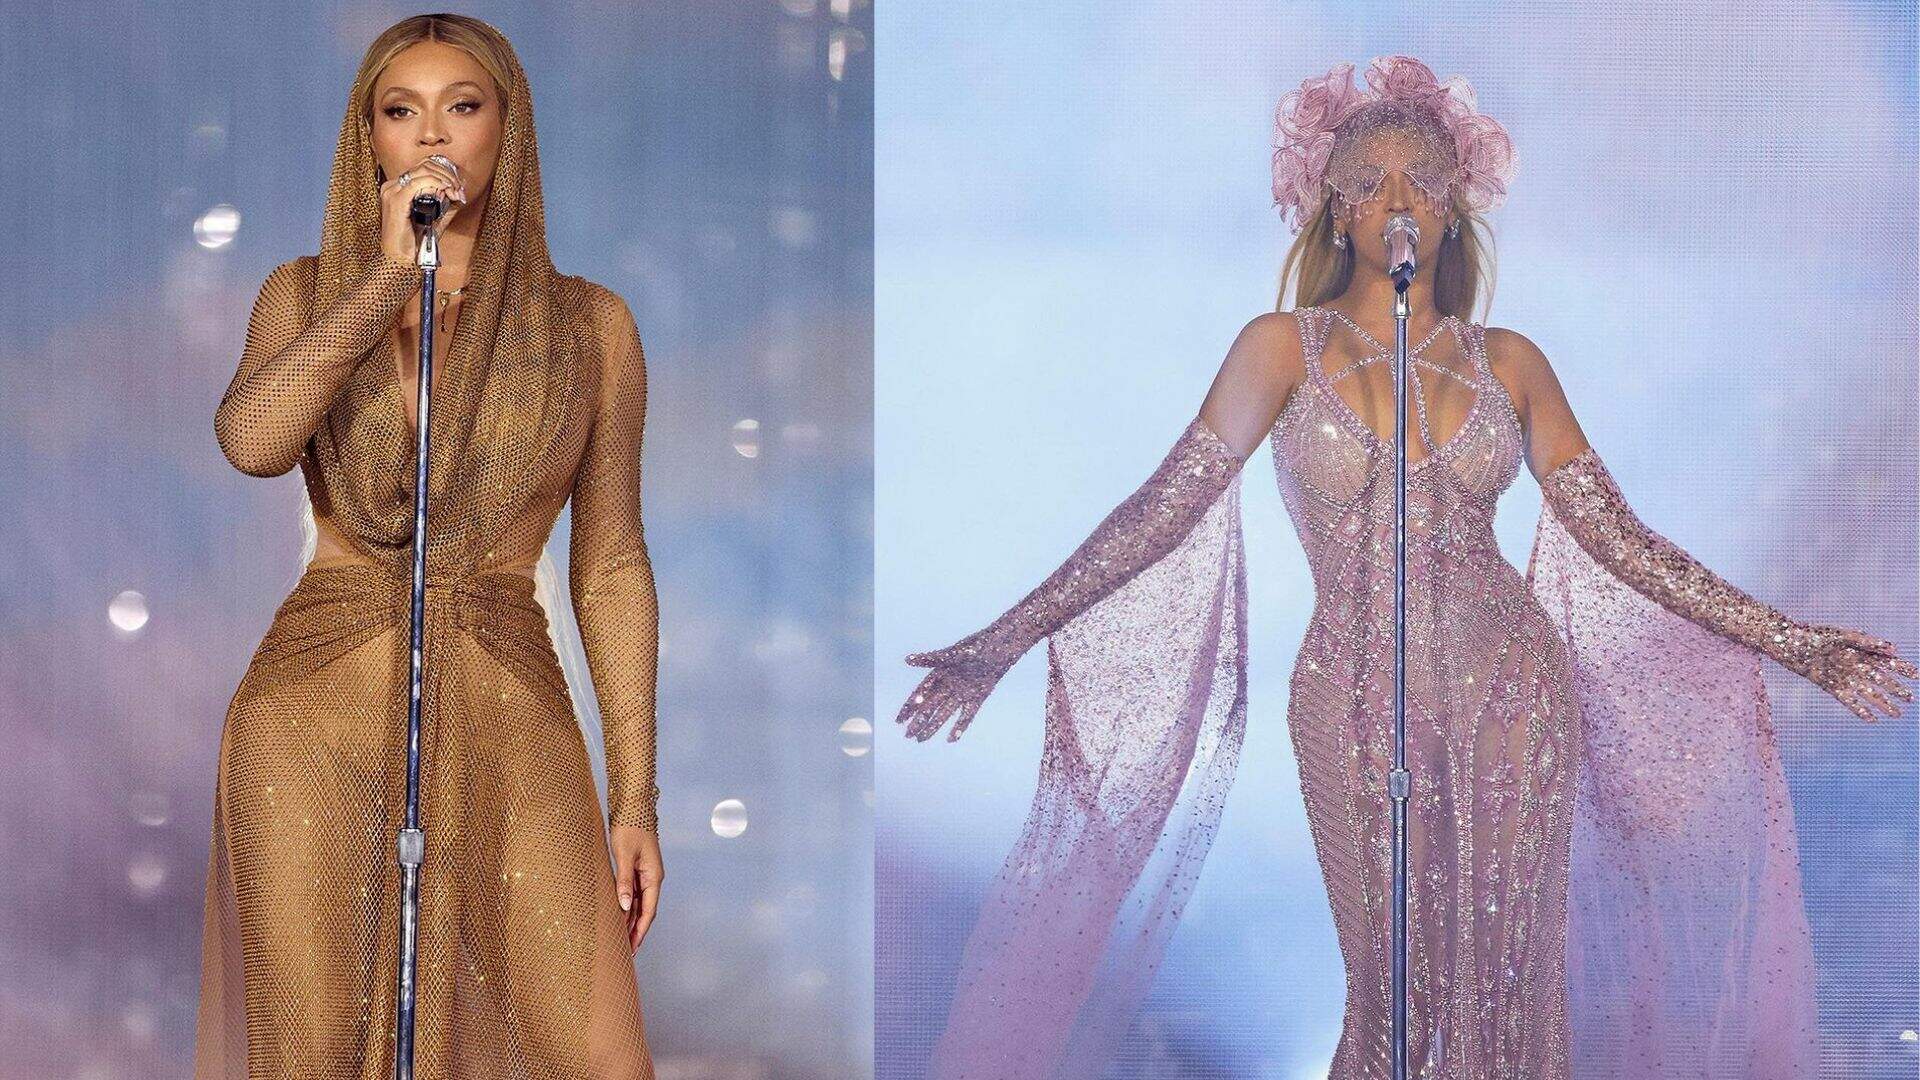 A maior! Beyoncé surge deslumbrante em novos figurinos na turnê Renaissance - Metropolitana FM